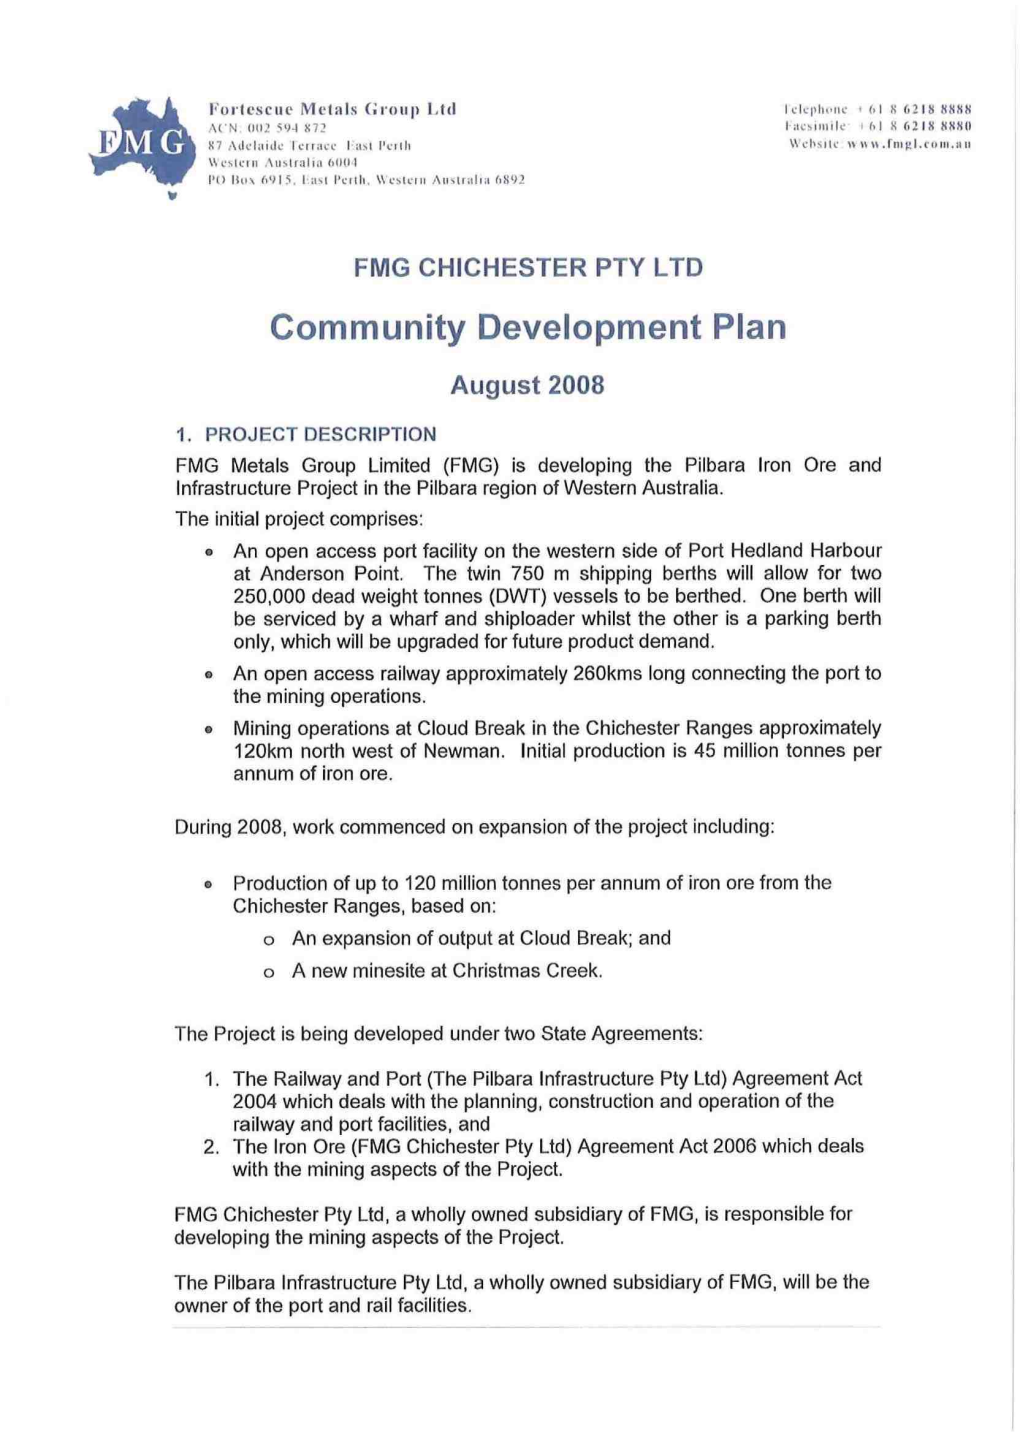 Chichester Community Development Plan